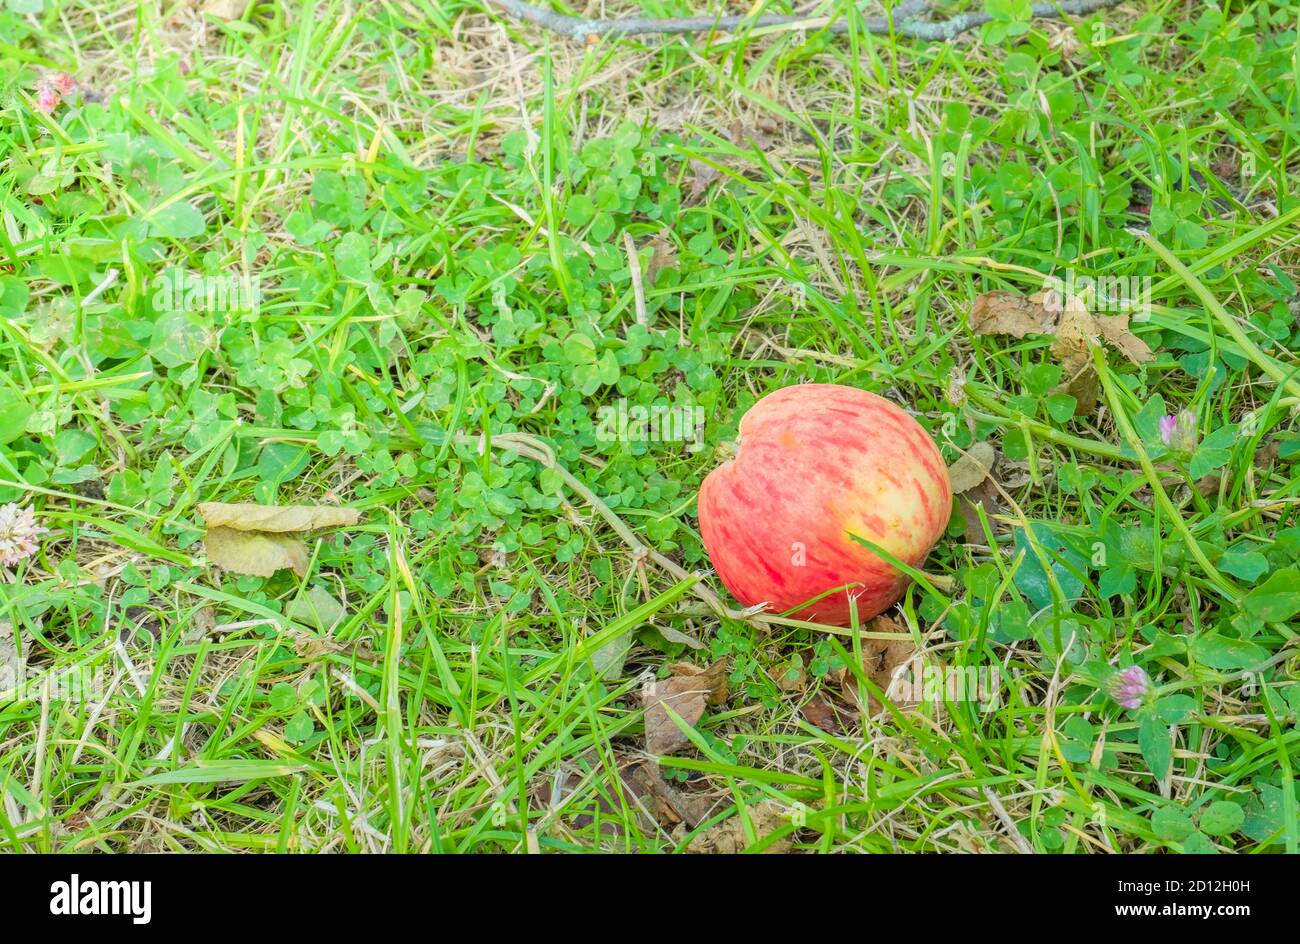 Una mela matura rossa cadde dall'albero di mele e giace sull'erba verde con trifoglio. Orientamento orizzontale, fuoco selettivo. Foto Stock